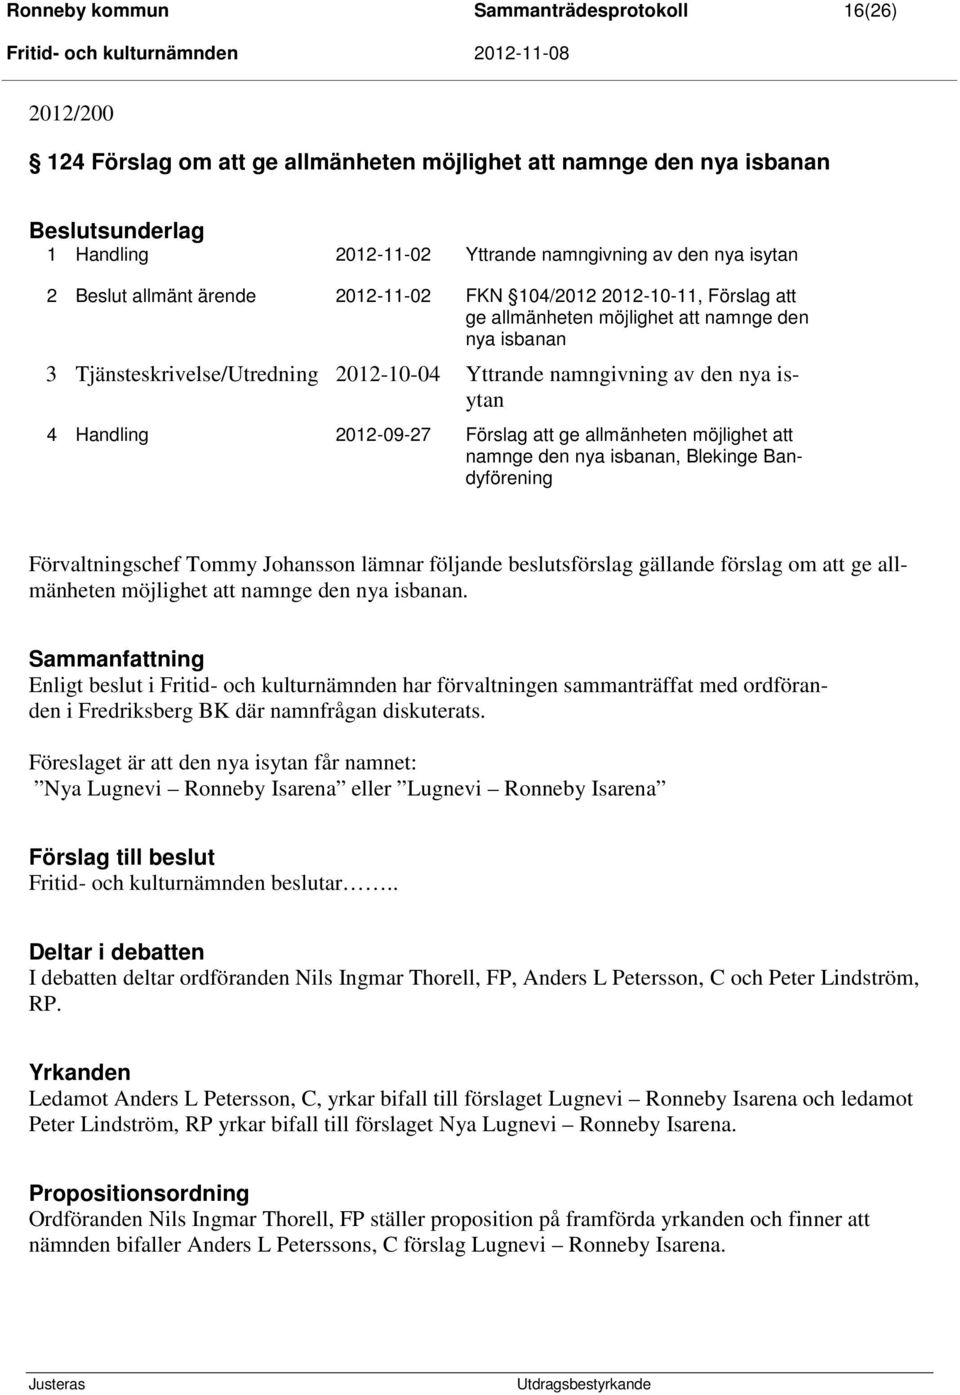 Handling 2012-09-27 Förslag att ge allmänheten möjlighet att namnge den nya isbanan, Blekinge Bandyförening Förvaltningschef Tommy Johansson lämnar följande beslutsförslag gällande förslag om att ge